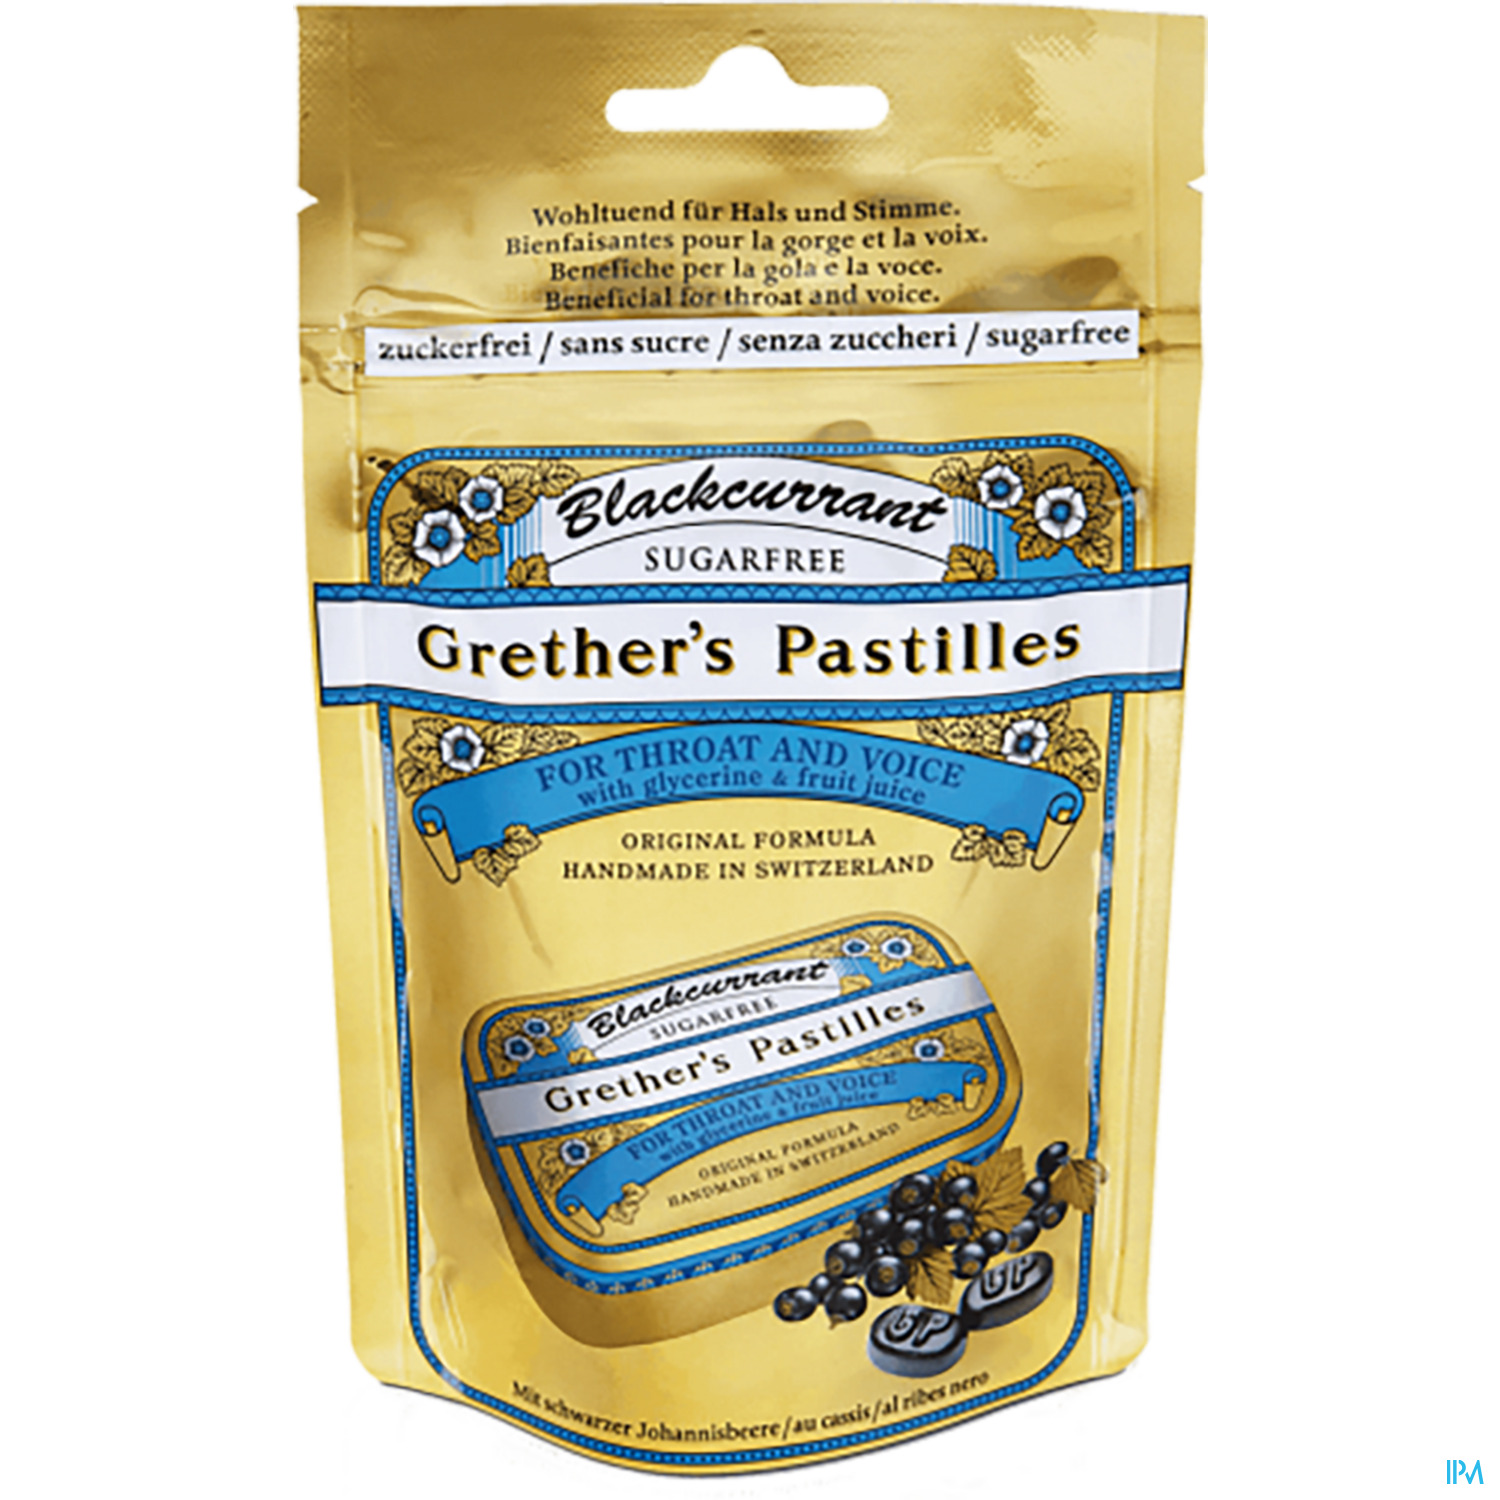 Grether's Pastilles Blackcurrant Zuckerfrei 100g